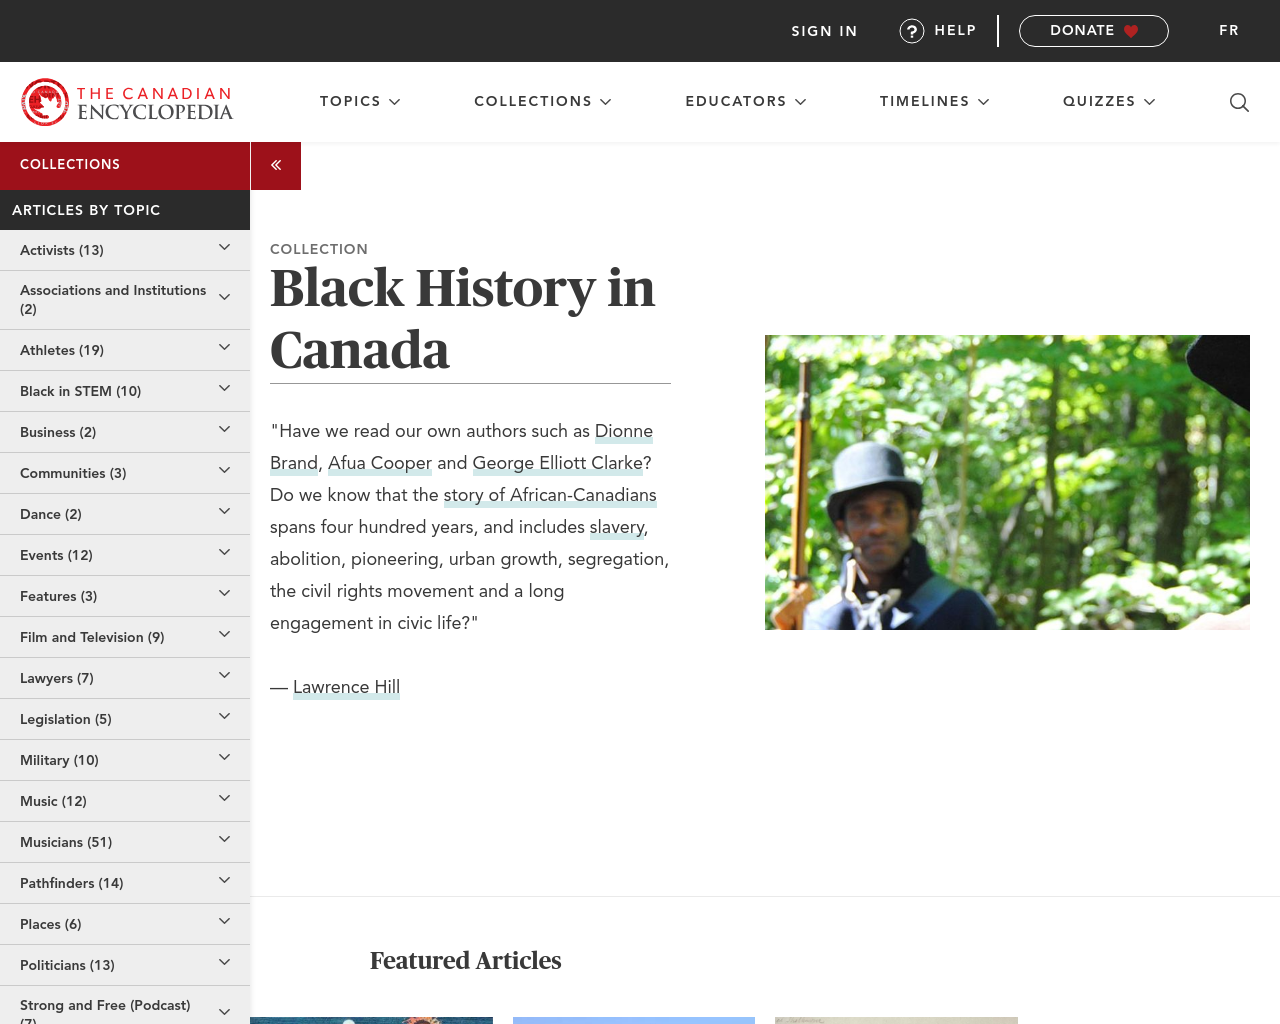 blackhistorycanada.ca